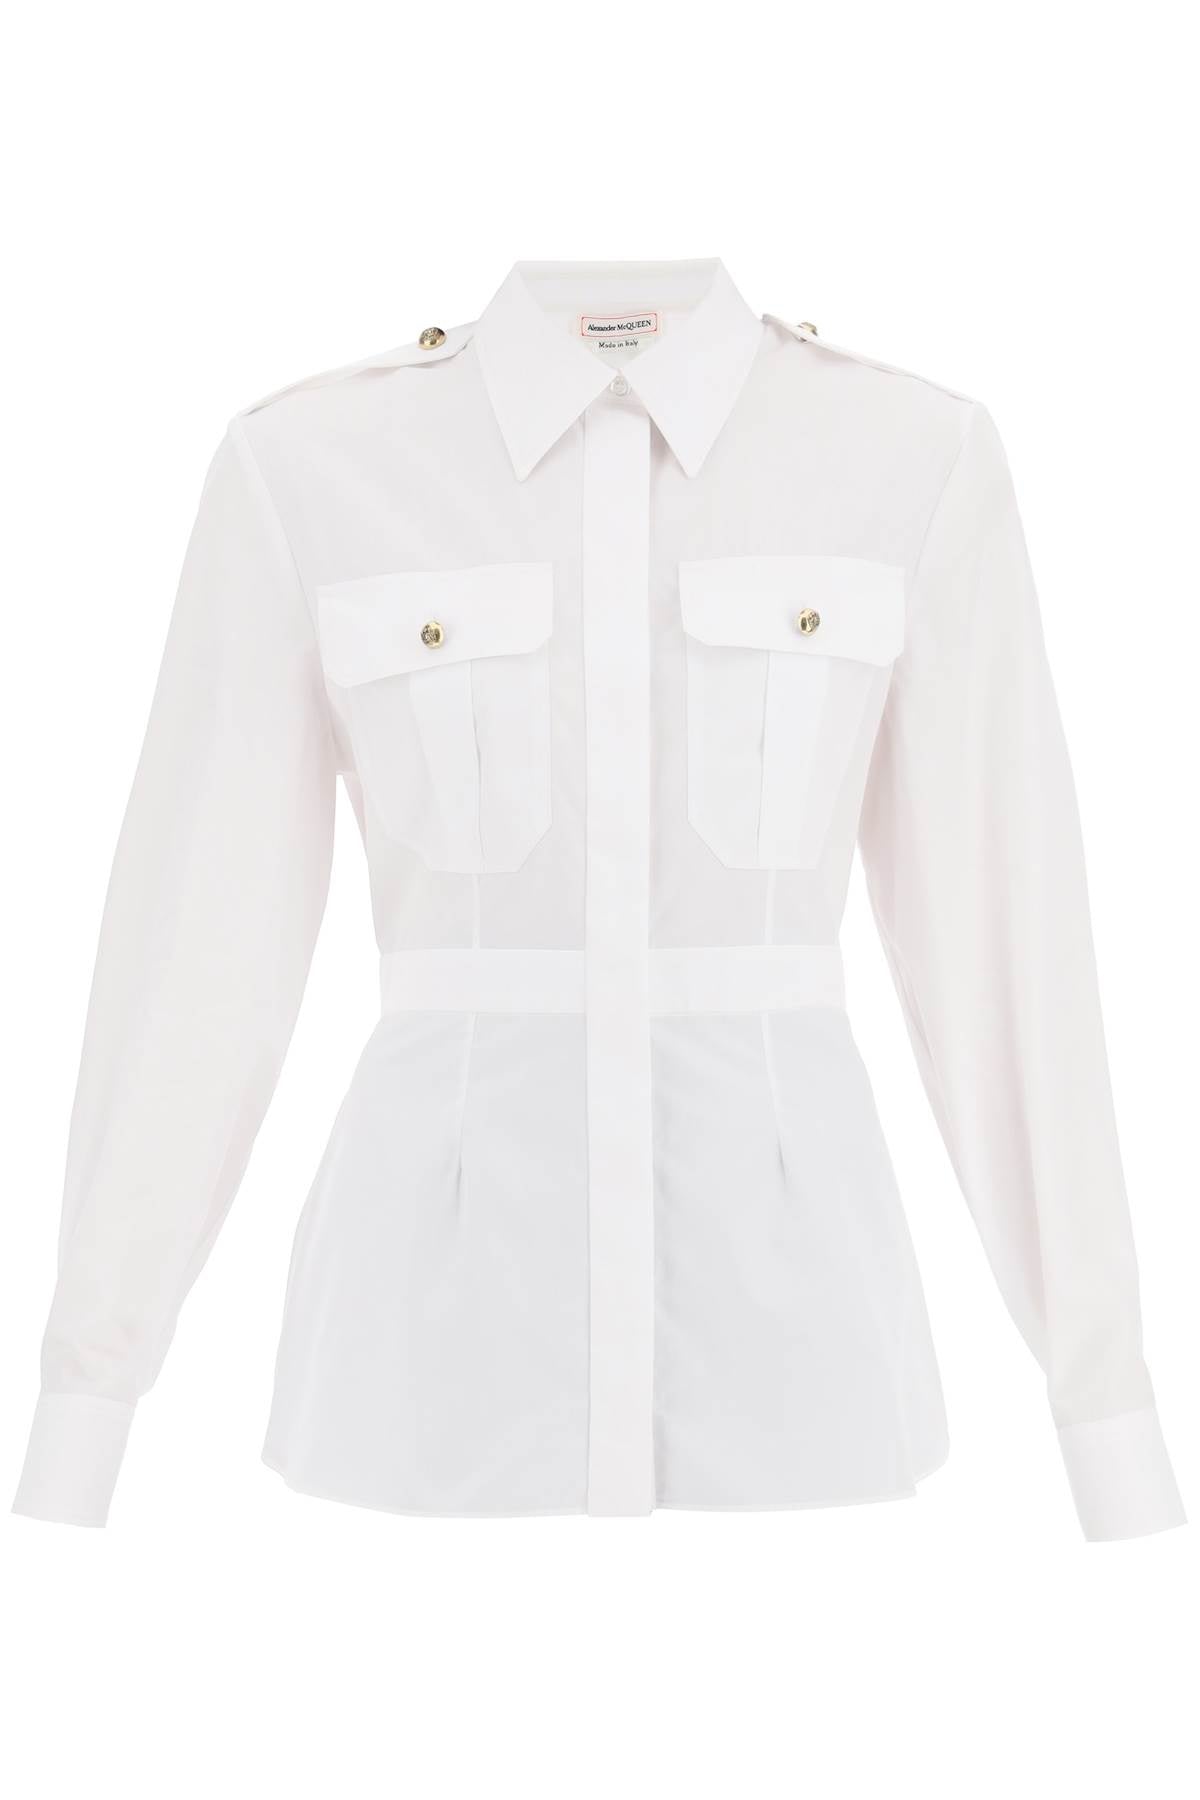 军事白色纯棉衬衫 自然腰线女款